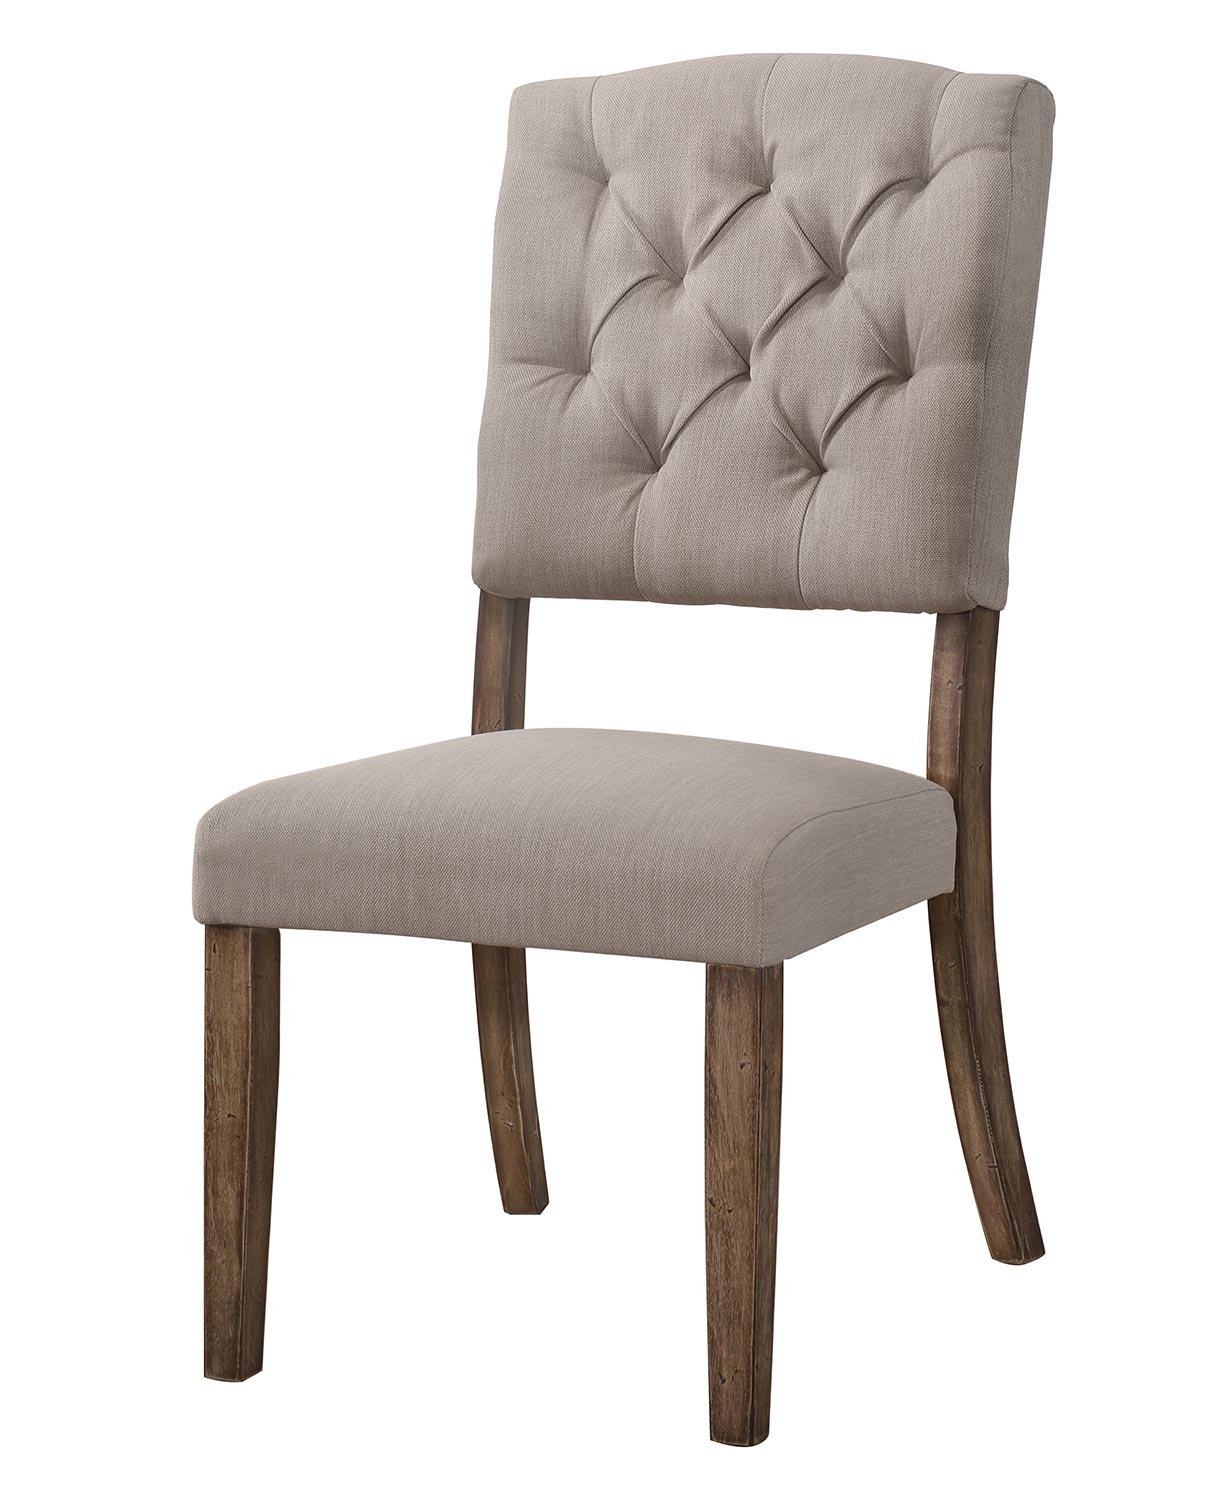 Acme Bernard Side Chair - Cream Linen/Weathered Oak